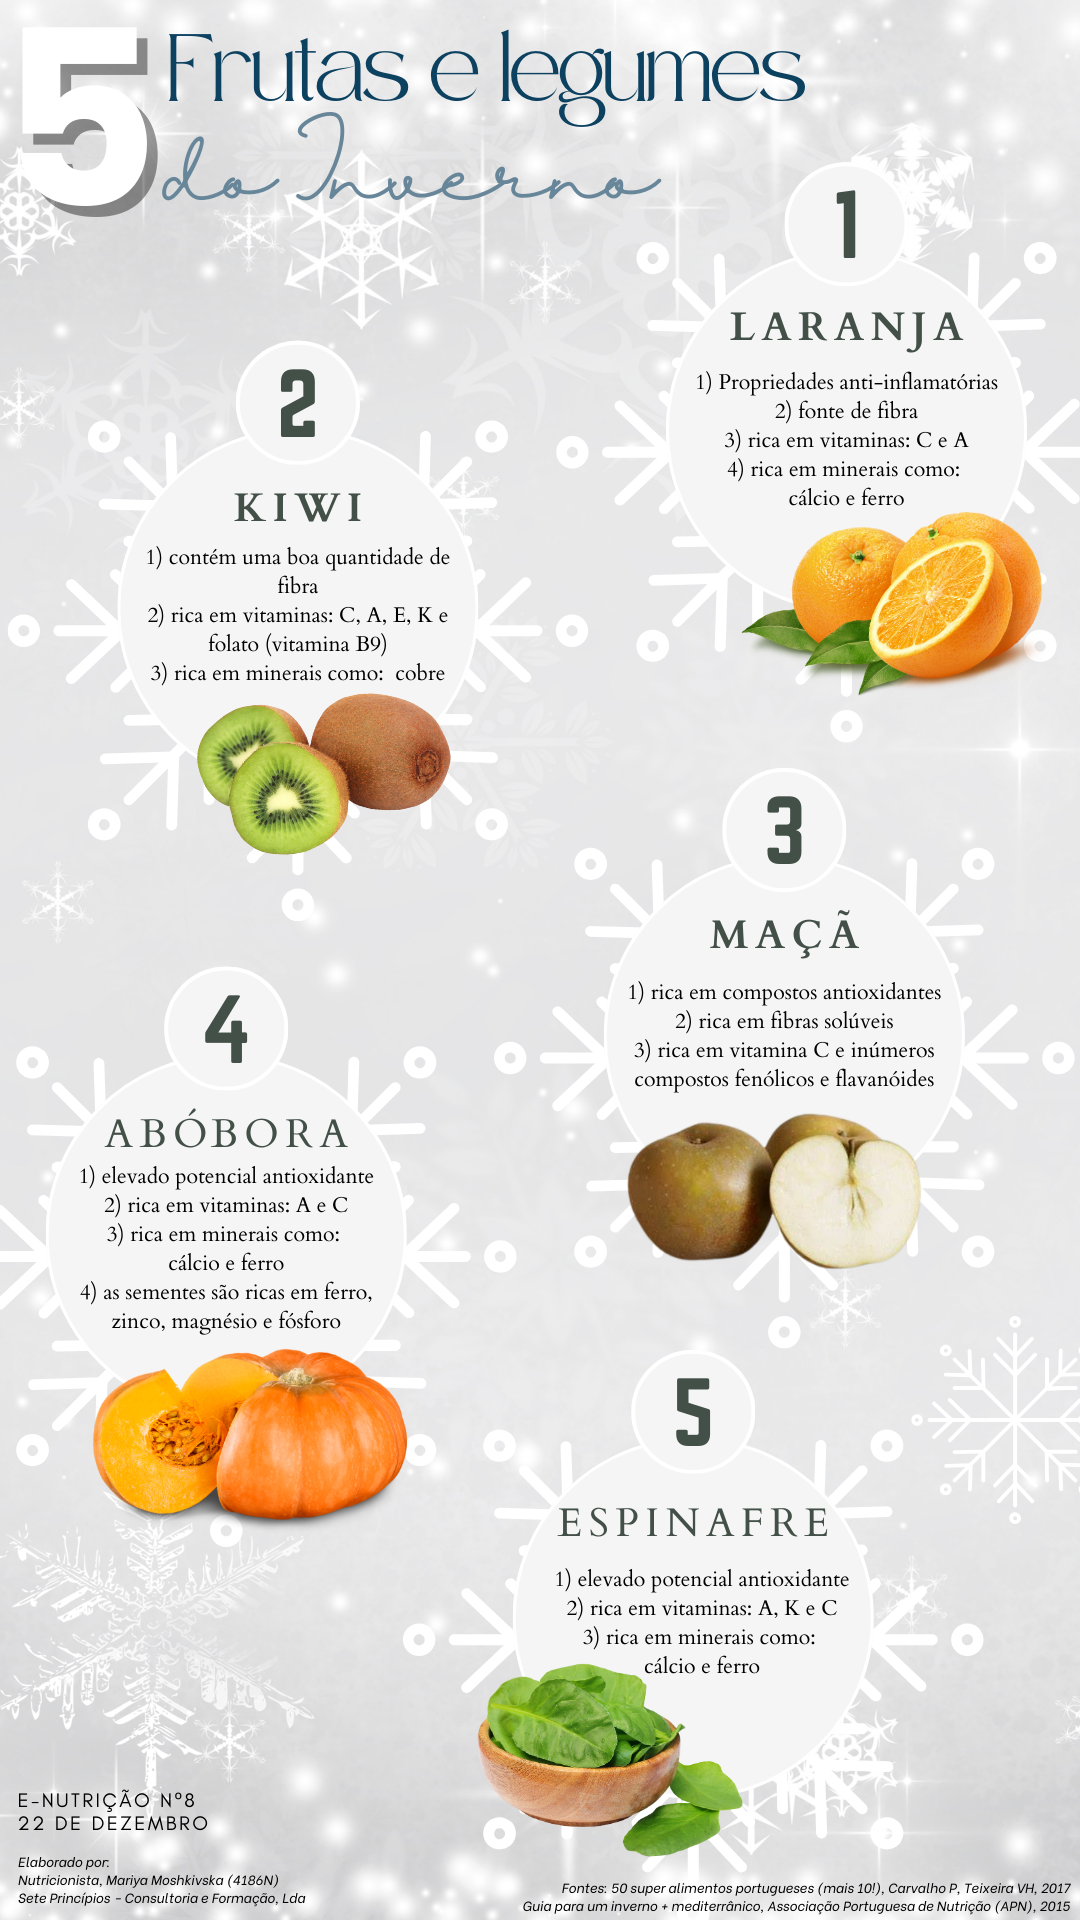 e-Nutrição nº8 - Frutas e legumes do Inverno